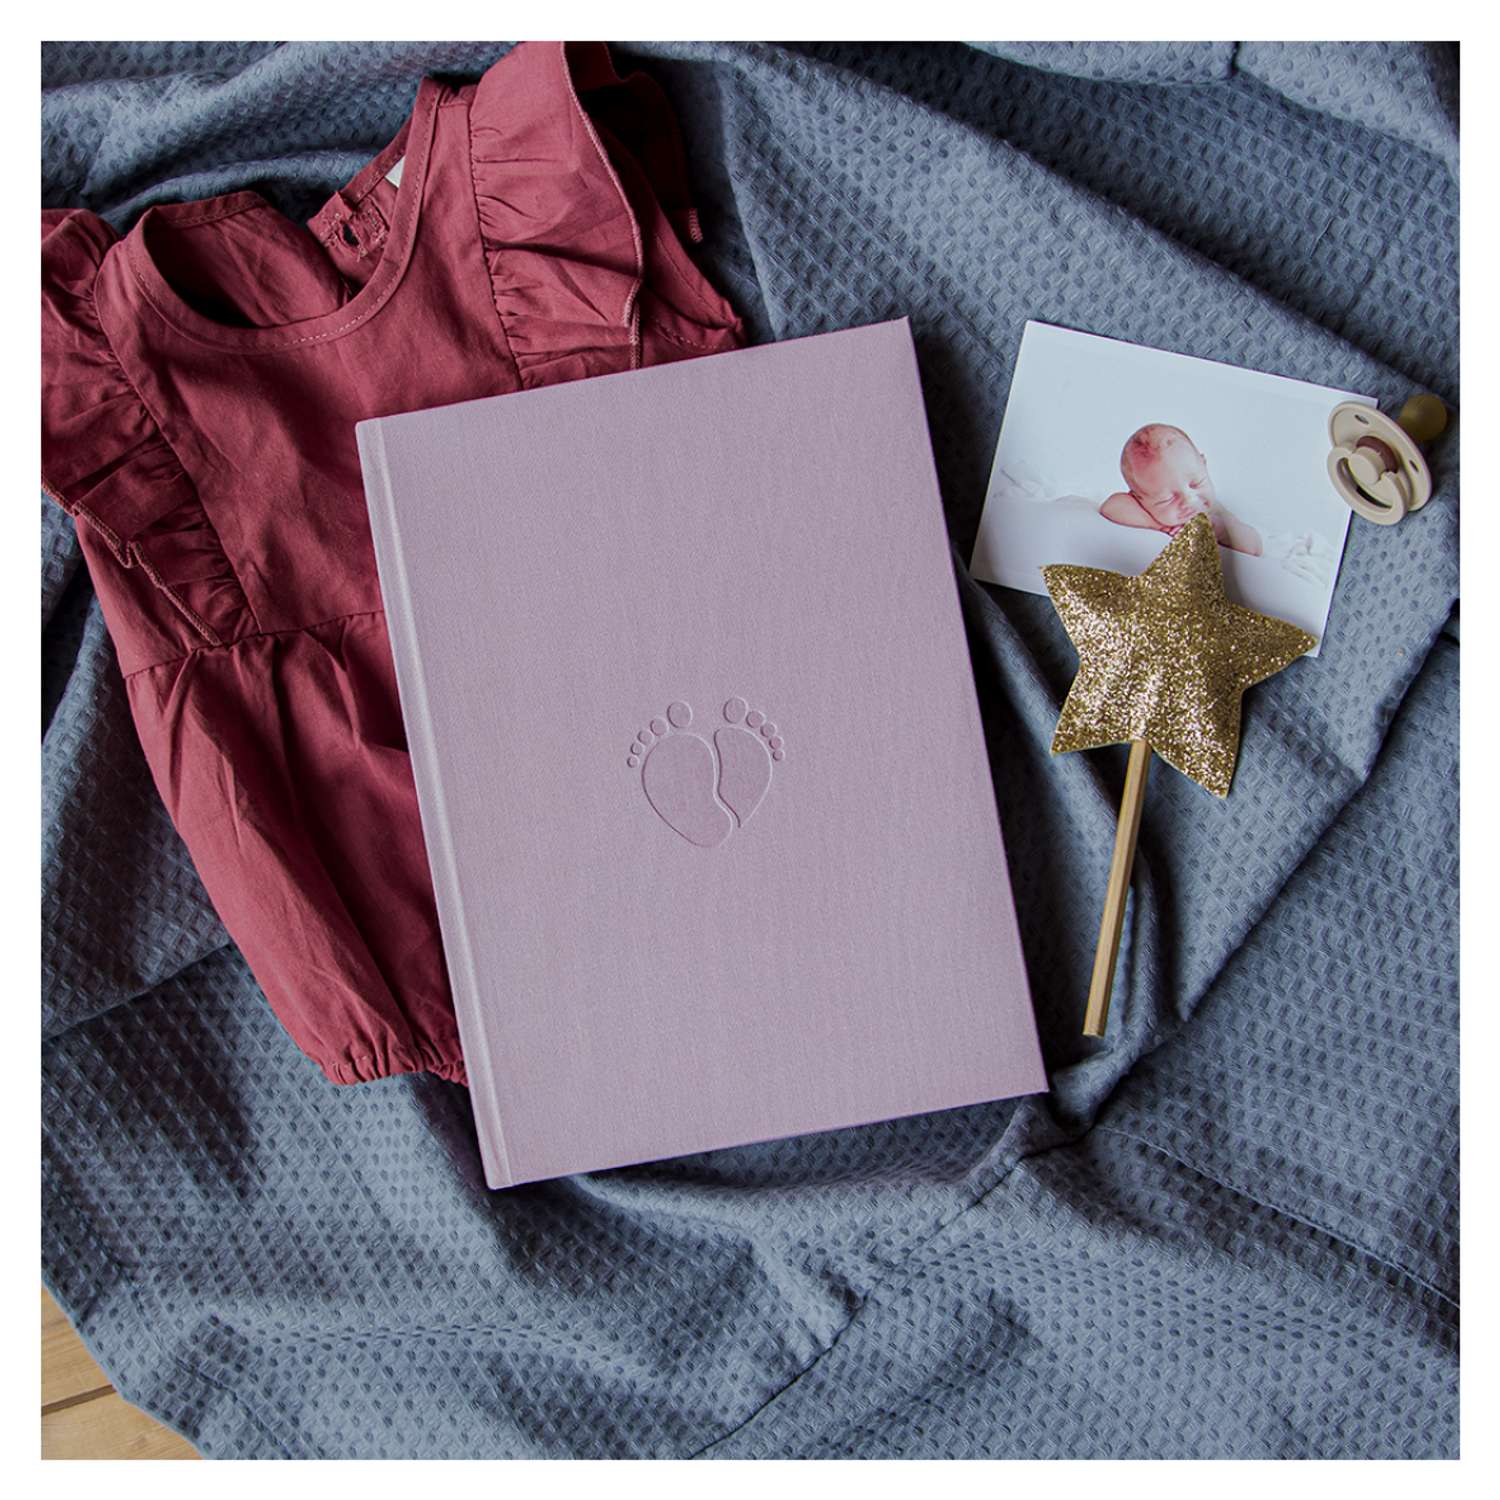 Фотоальбом-дневник Moms Book Первый альбом малышки. Розовый для девочки. Текстиль - фото 2